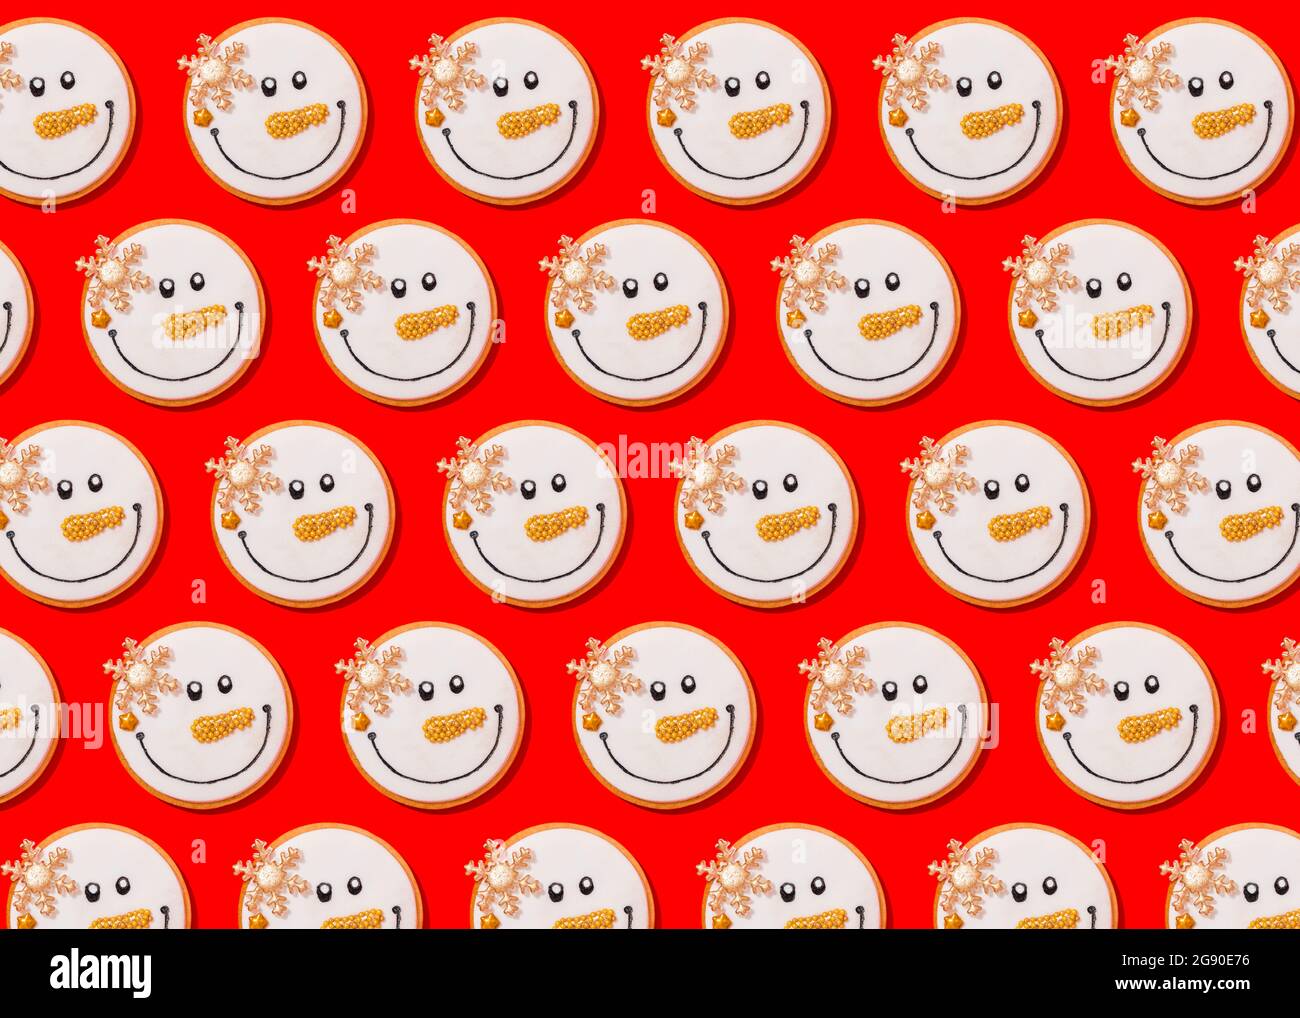 Motif de biscuits de Noël en forme de bonhomme de neige posé à plat sur fond rouge vif Banque D'Images